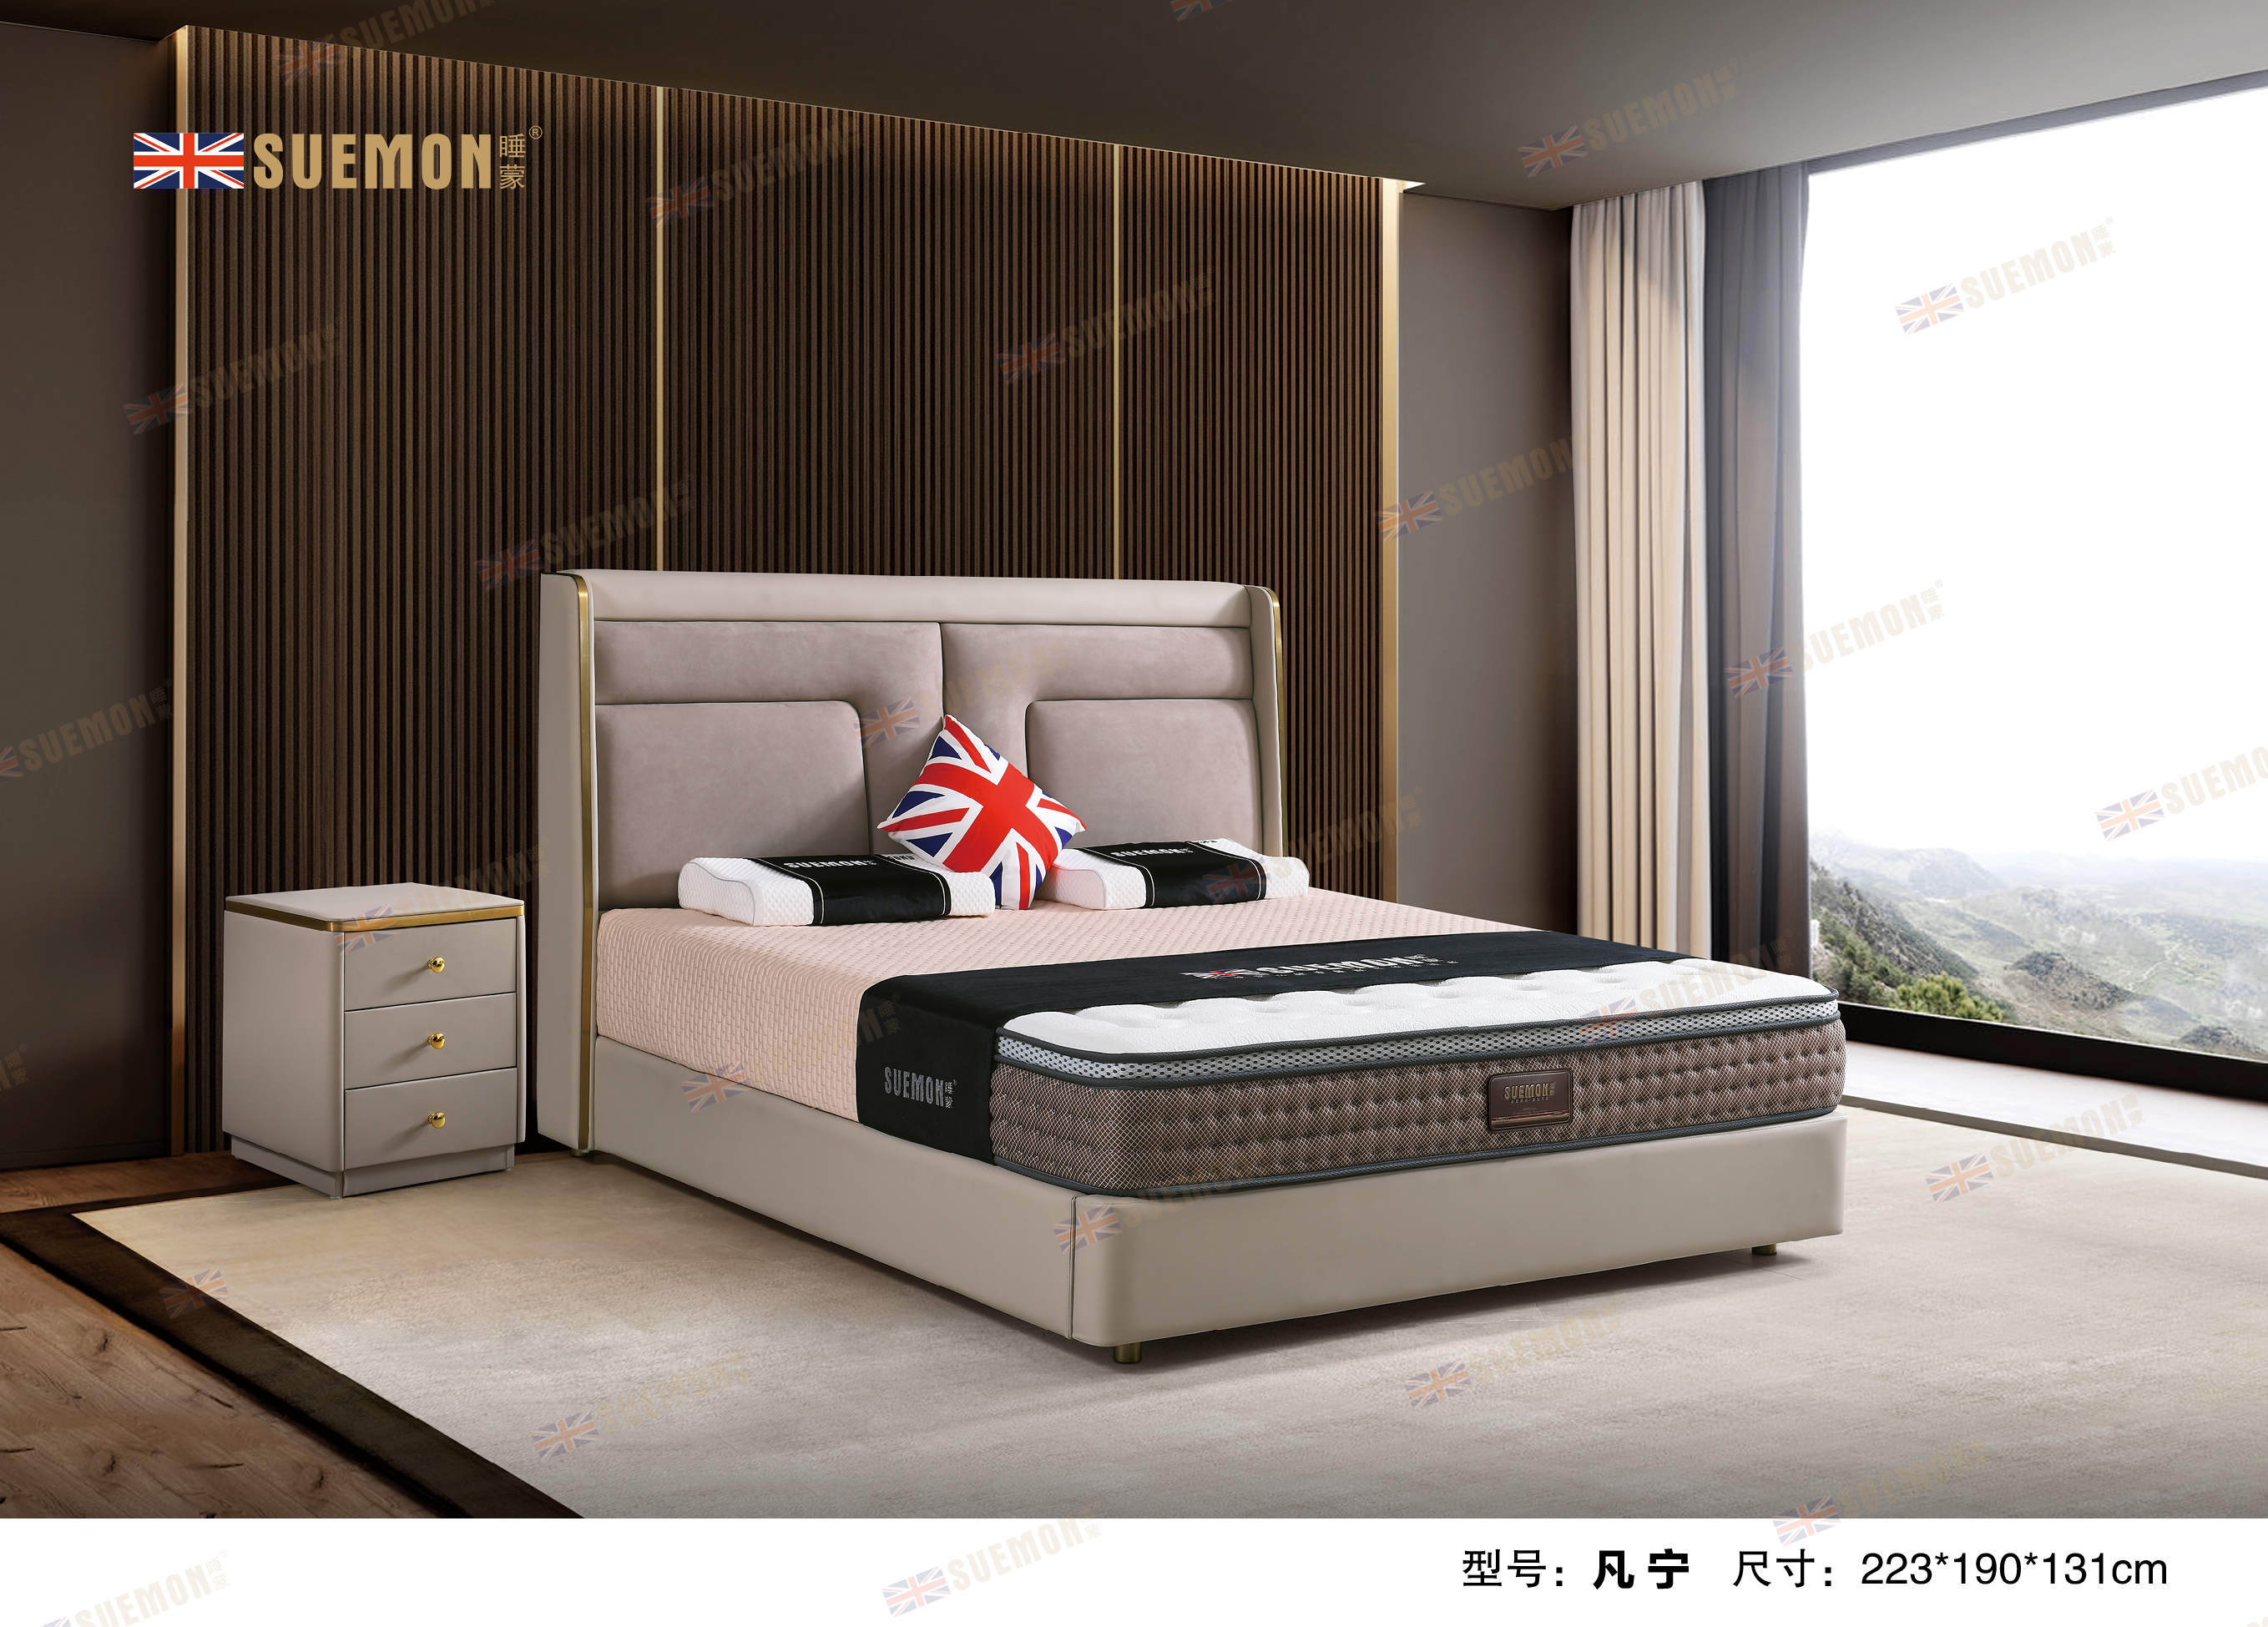 广东省名牌,床垫十大品牌,最具影响力的床垫家具企业之一,大型综合性